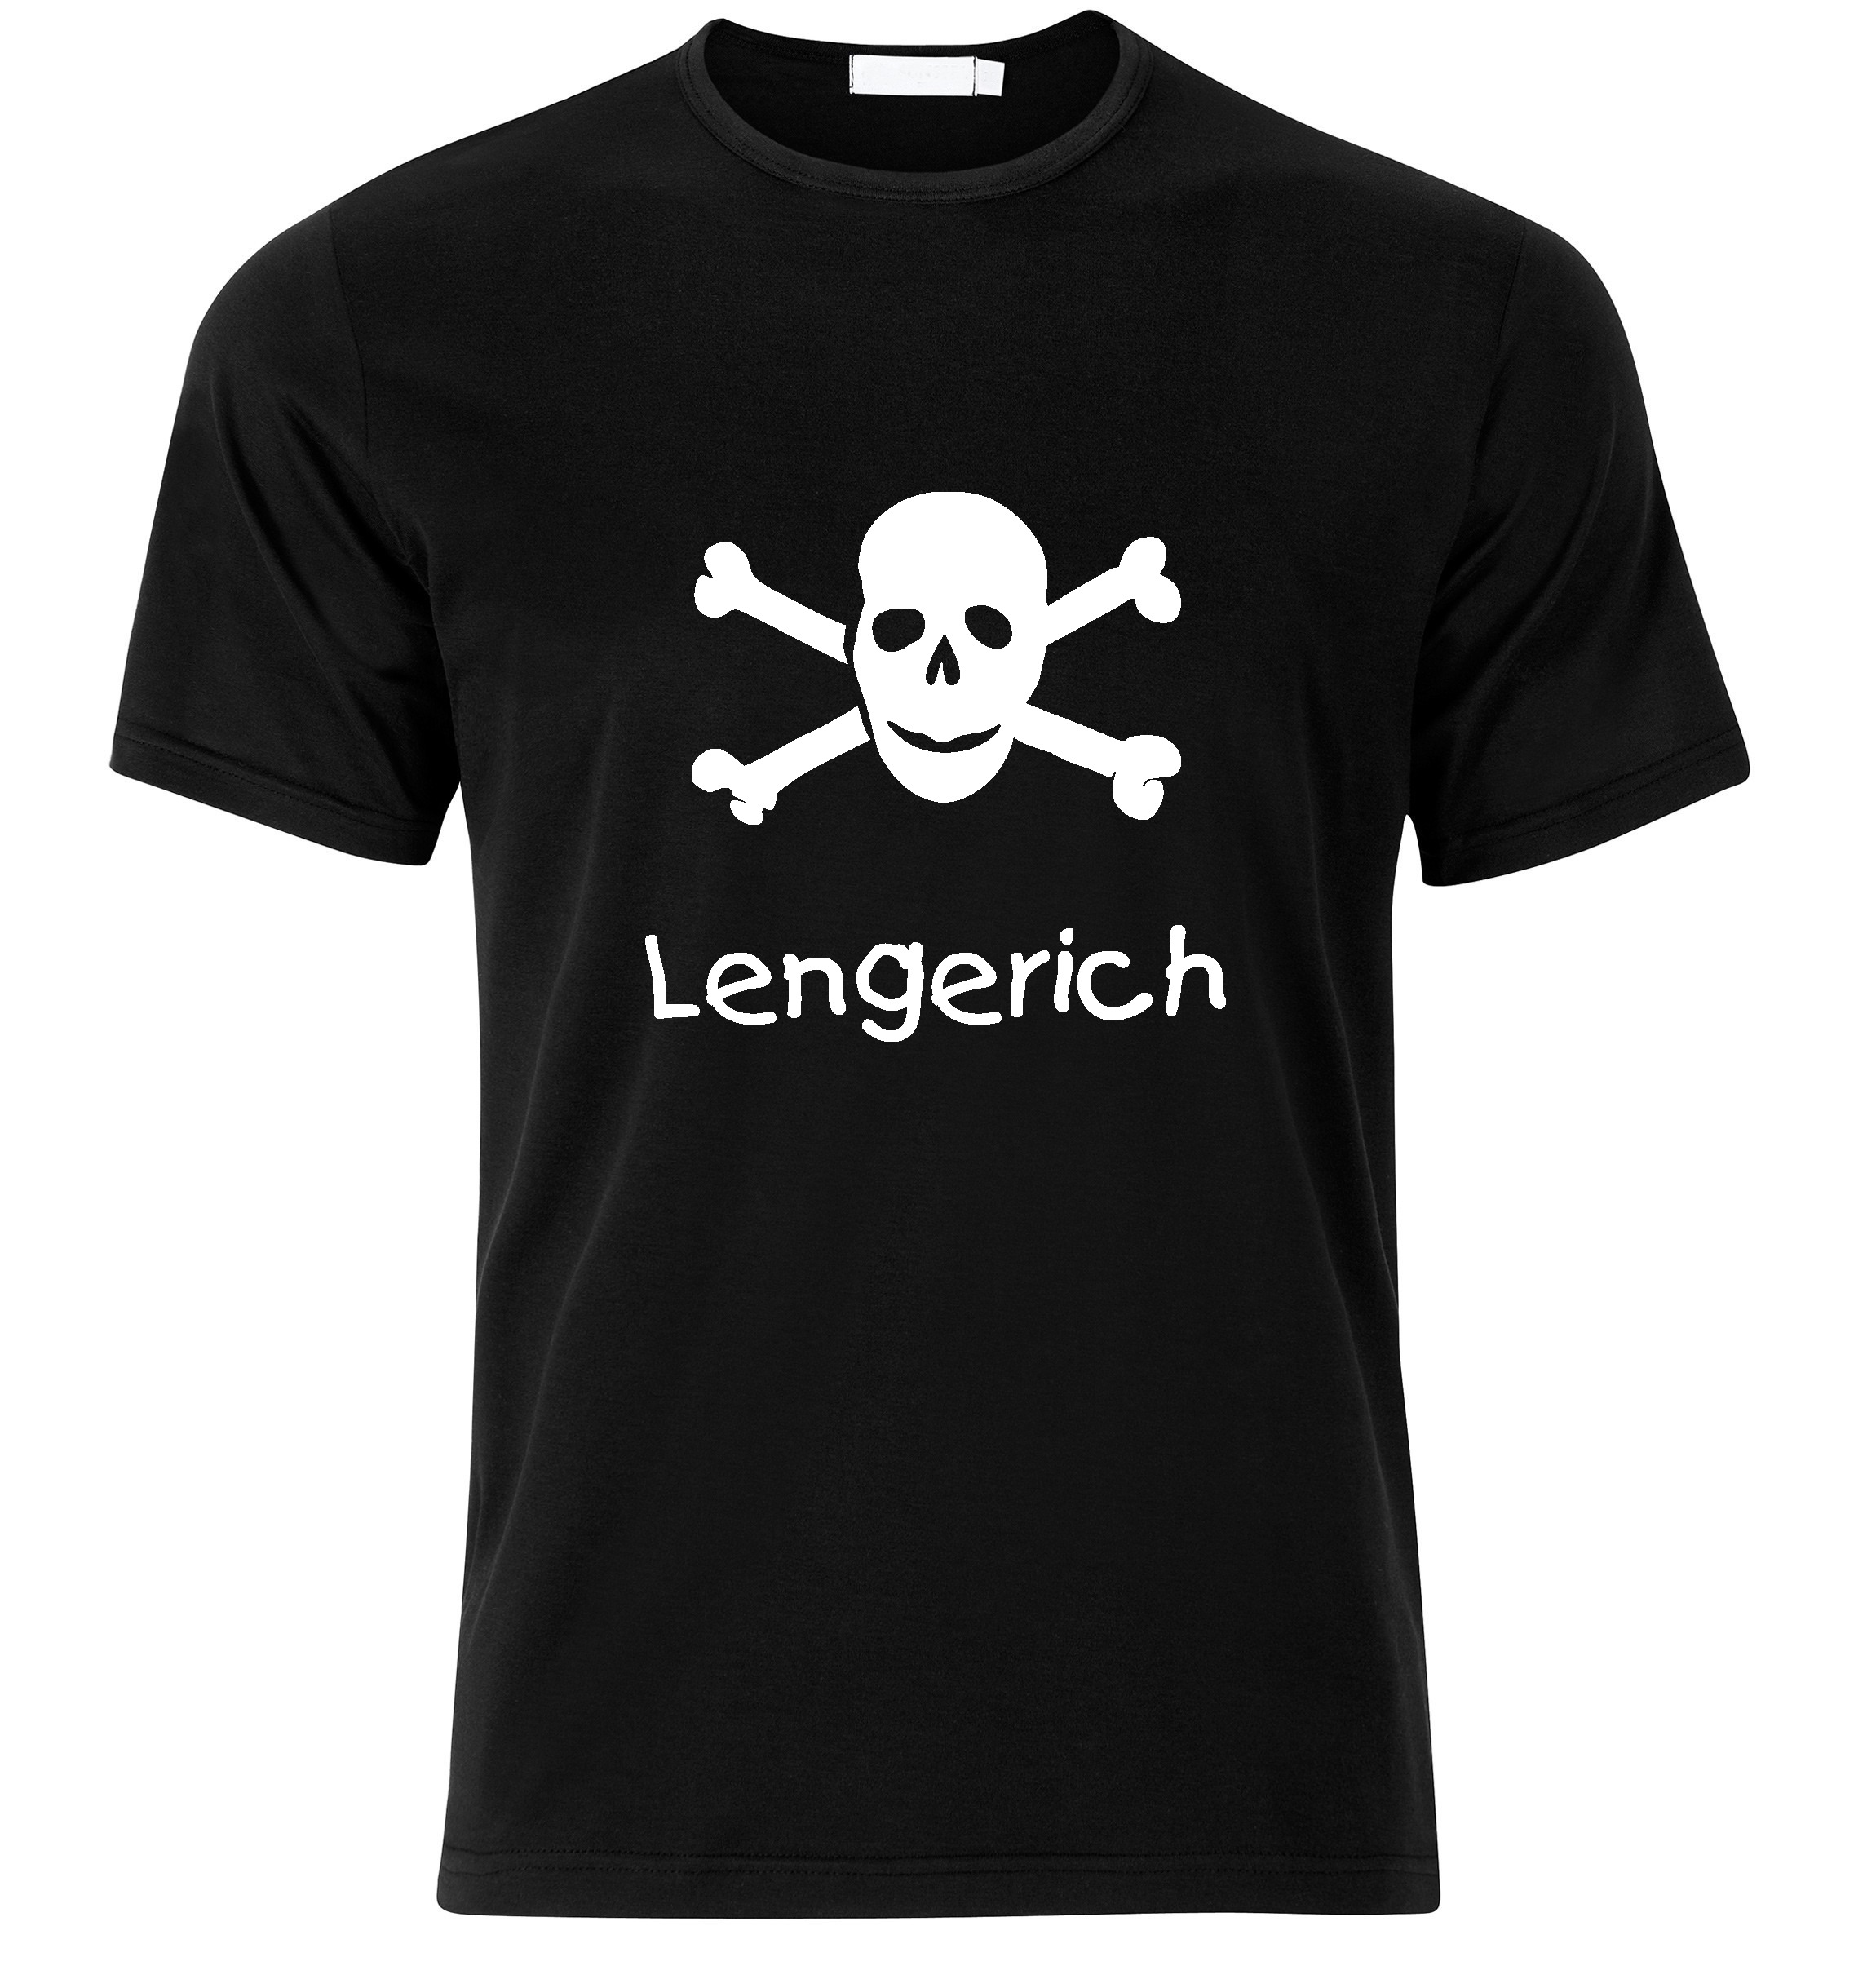 T-Shirt Lengerich Jolly Roger, Totenkopf